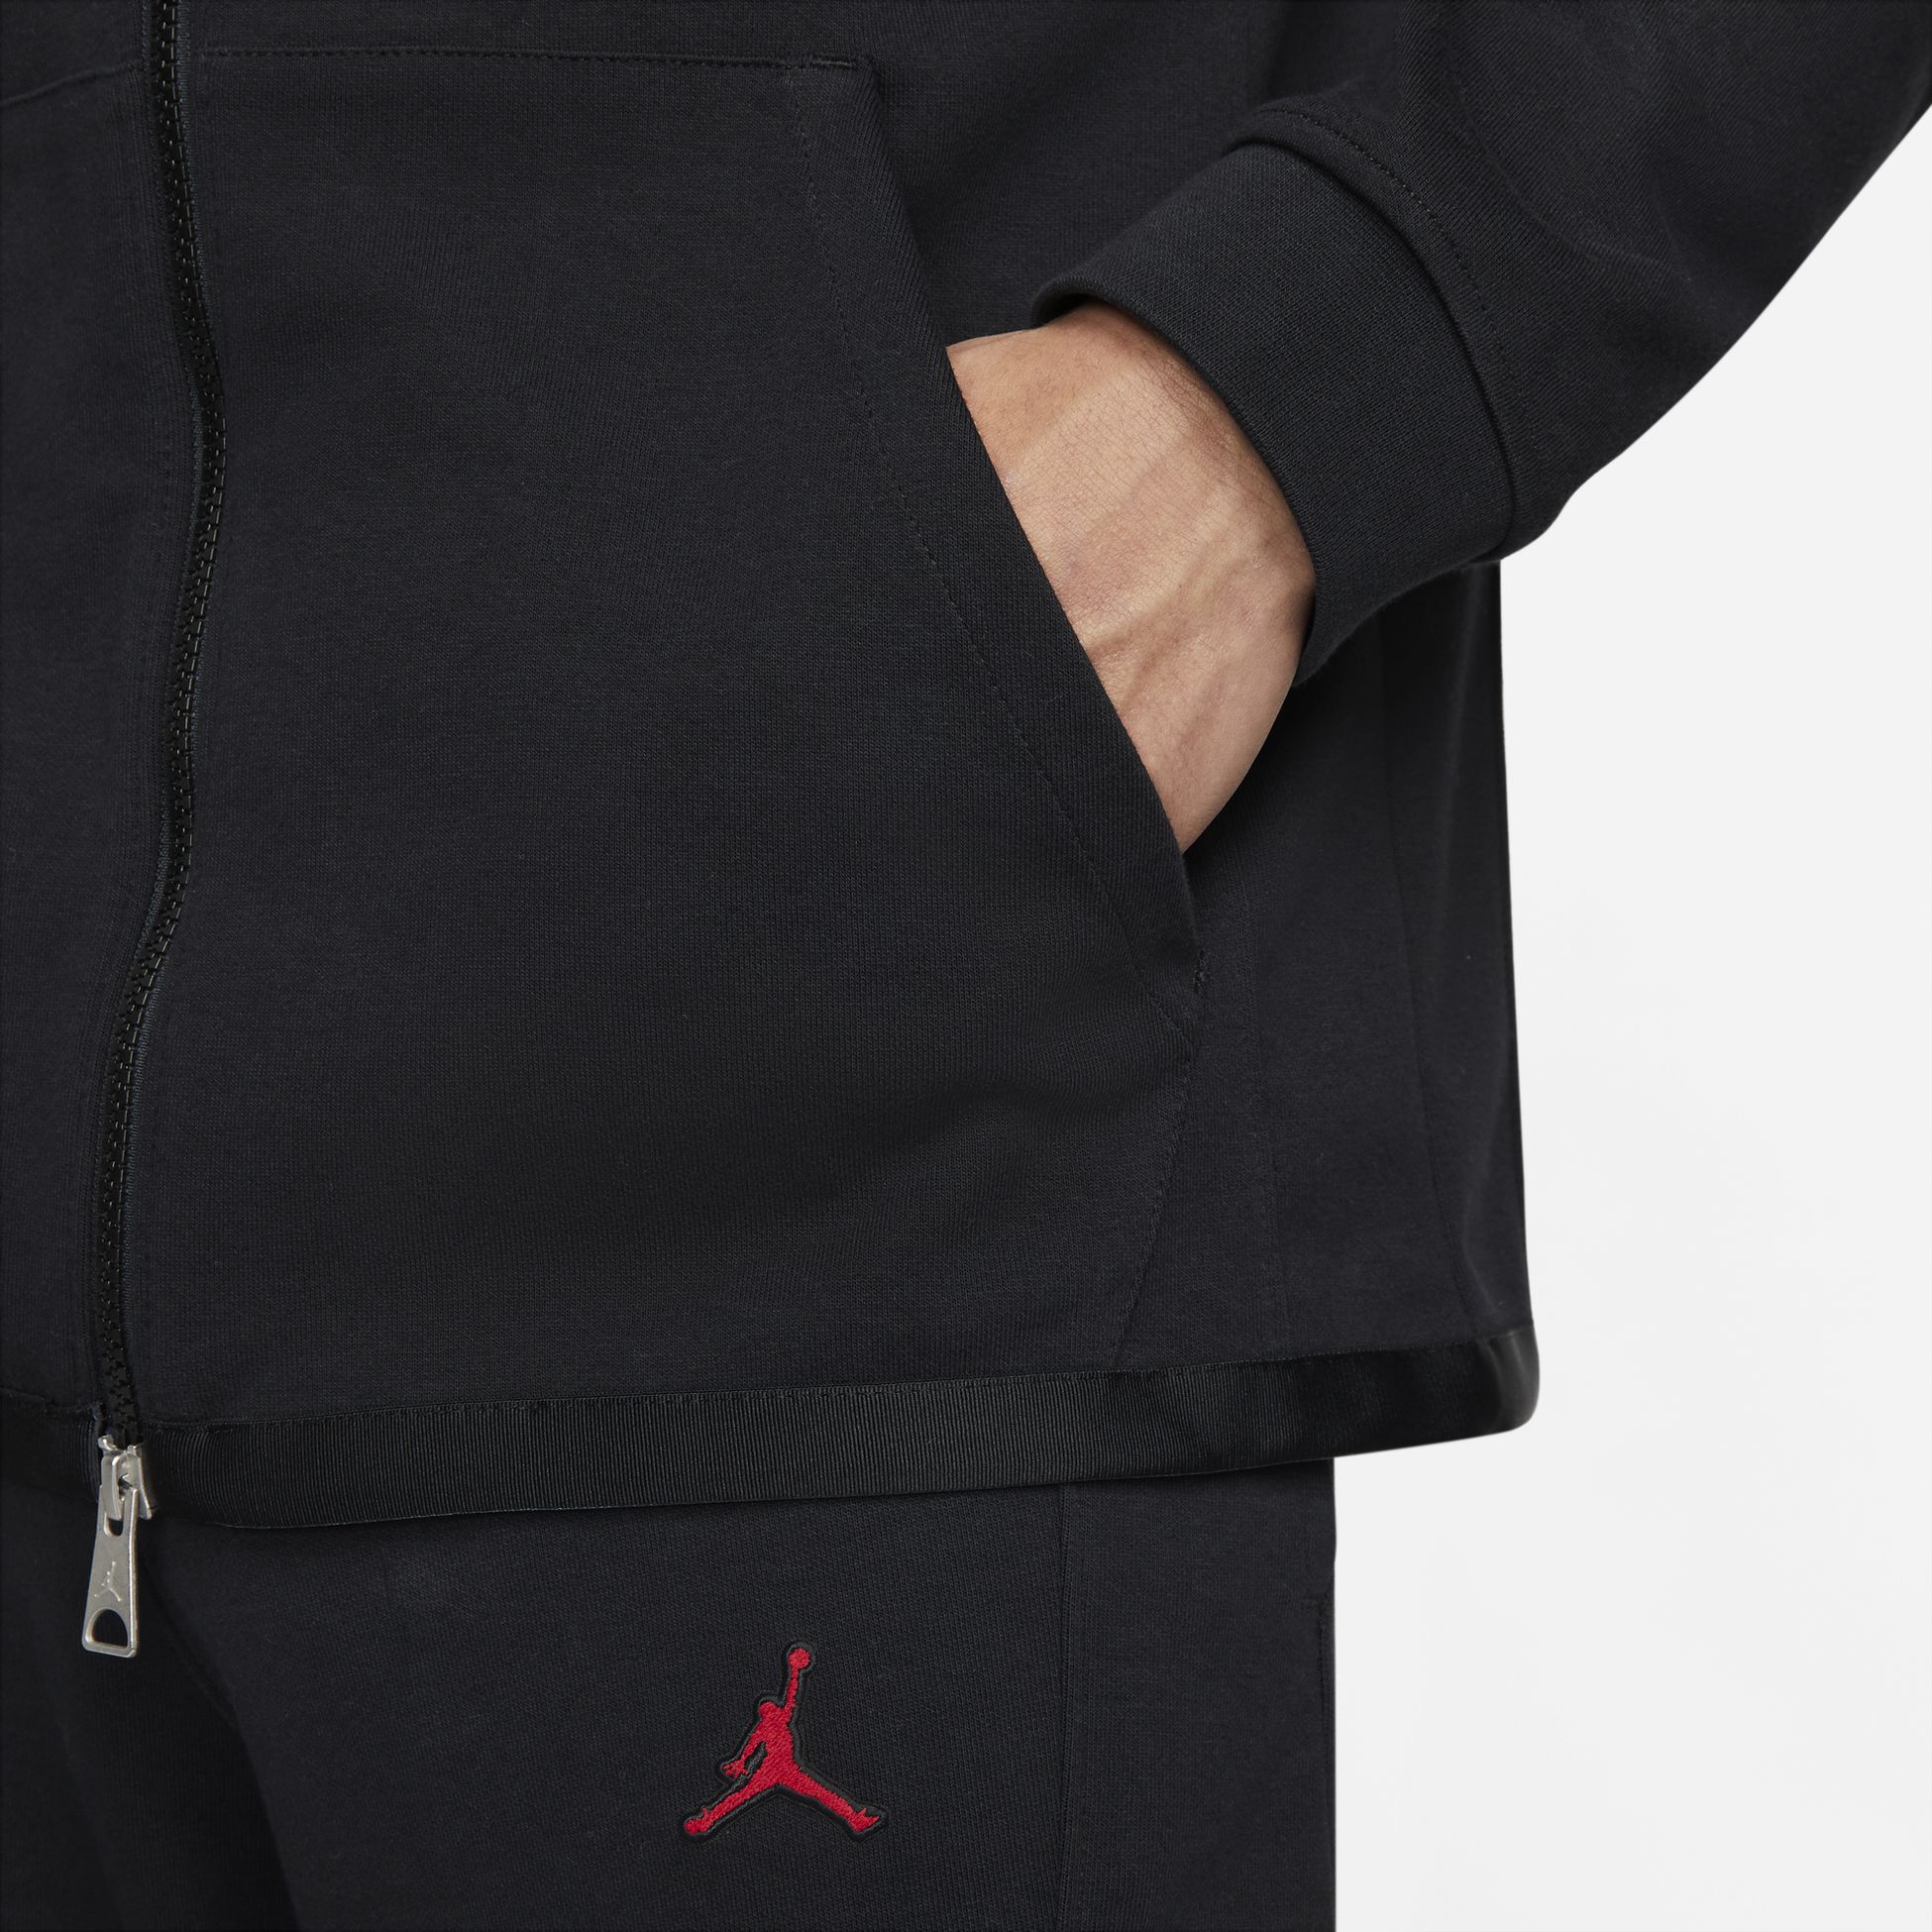 JORDAN, Jordan Essentials Men's Warmup Jacket